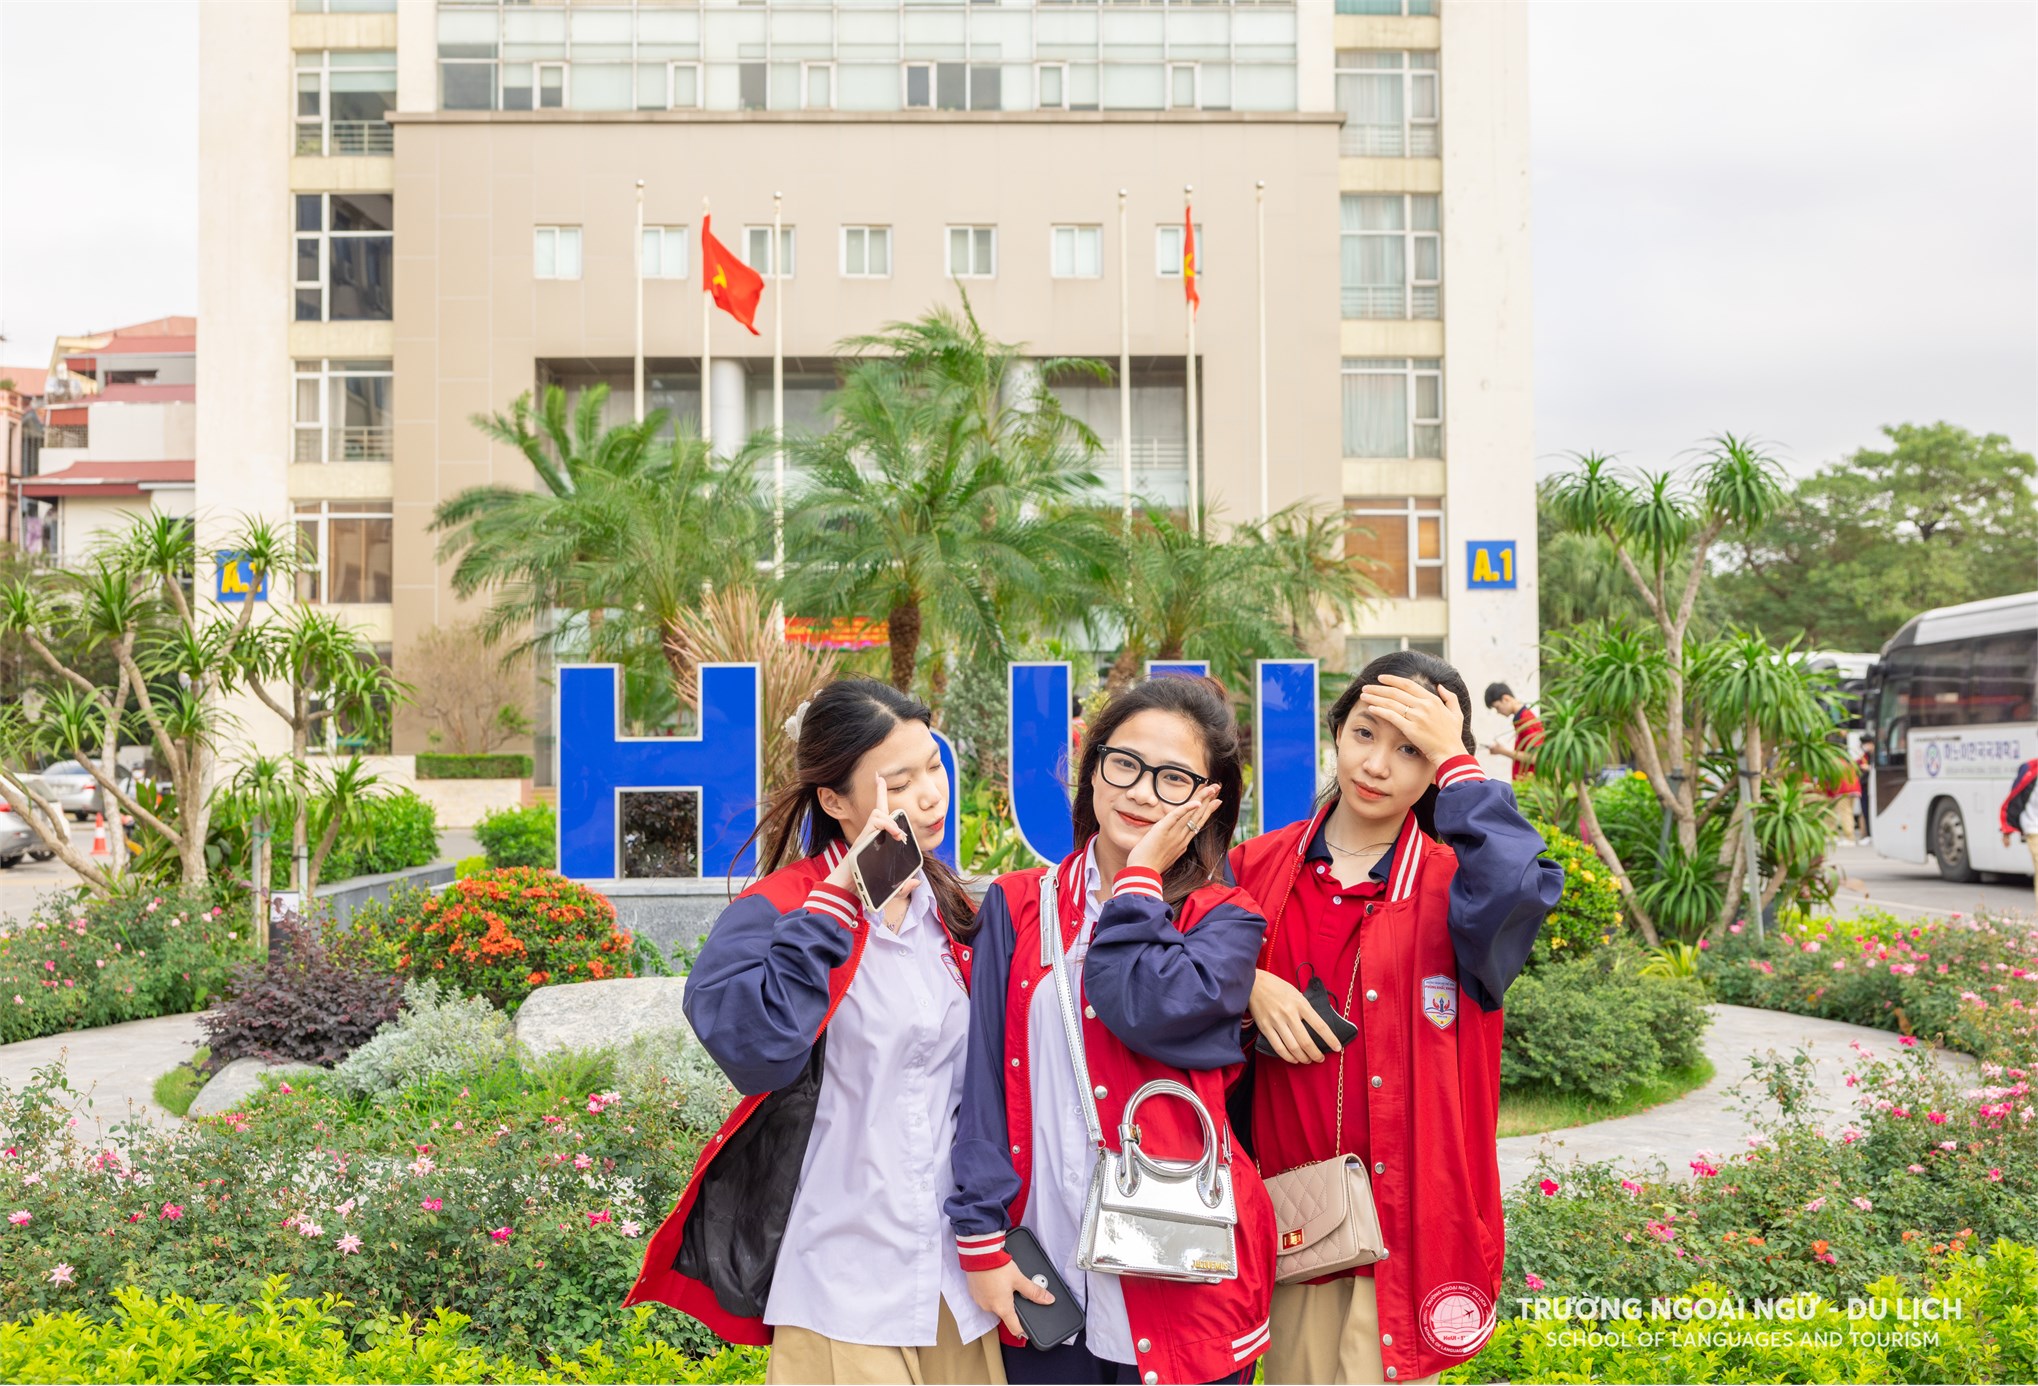 Đại học Công nghiệp Hà Nội đón gần 400 thầy cô, phụ huynh và học sinh Trường THPT Phùng Khắc Khoan, Đống Đa, Hà Nội